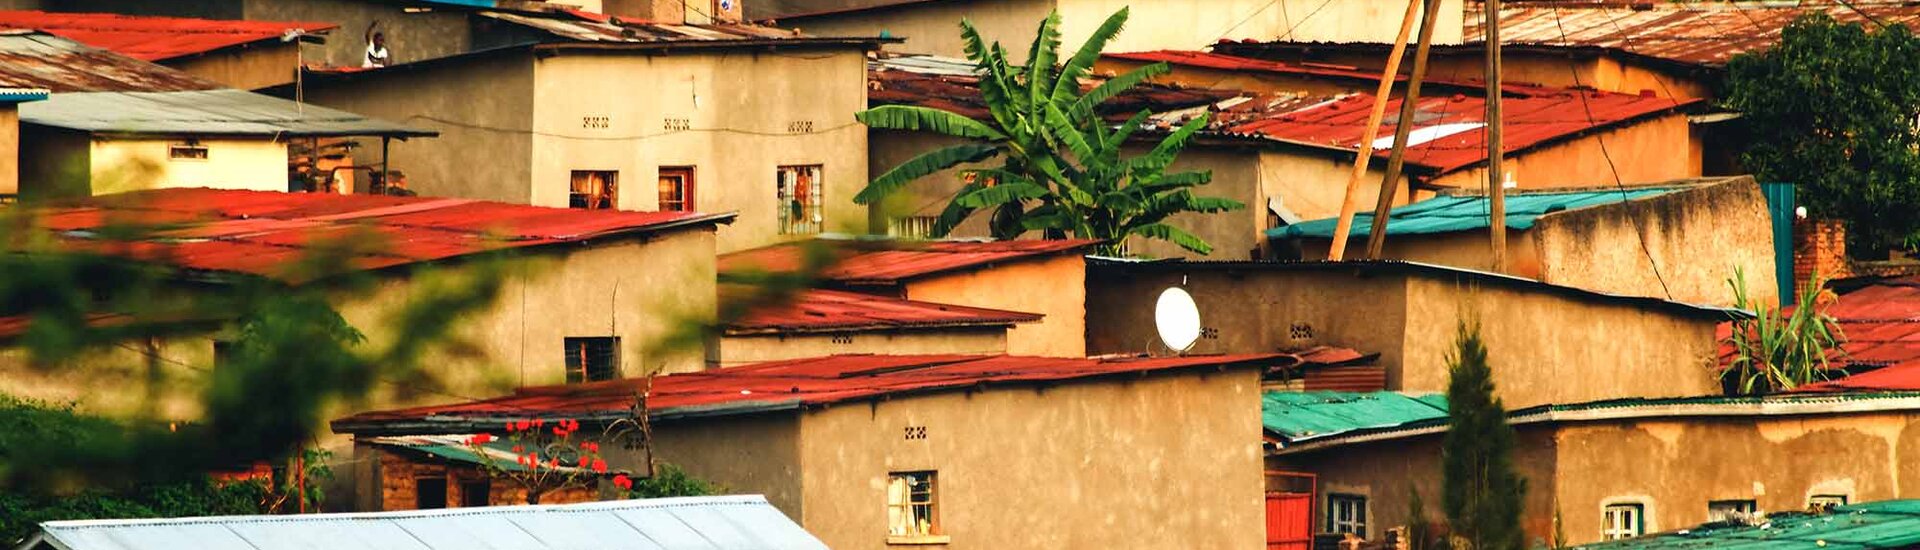 Häuser in Kigali